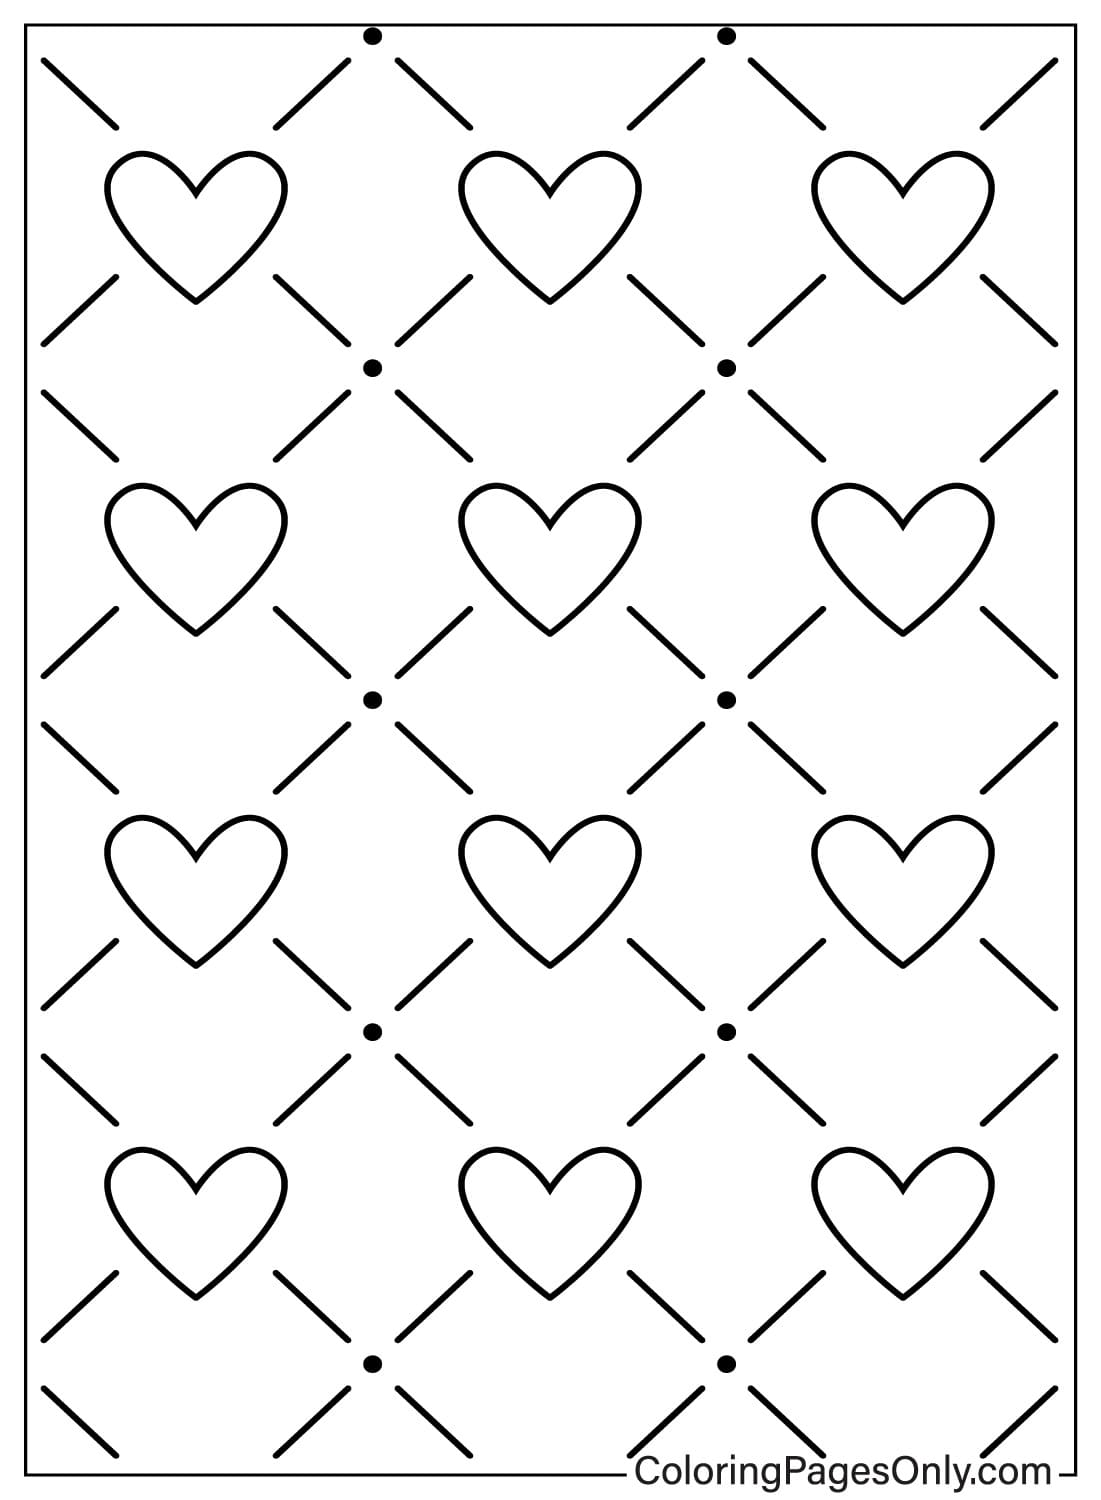 Página para colorear de patrón de corazón gratis